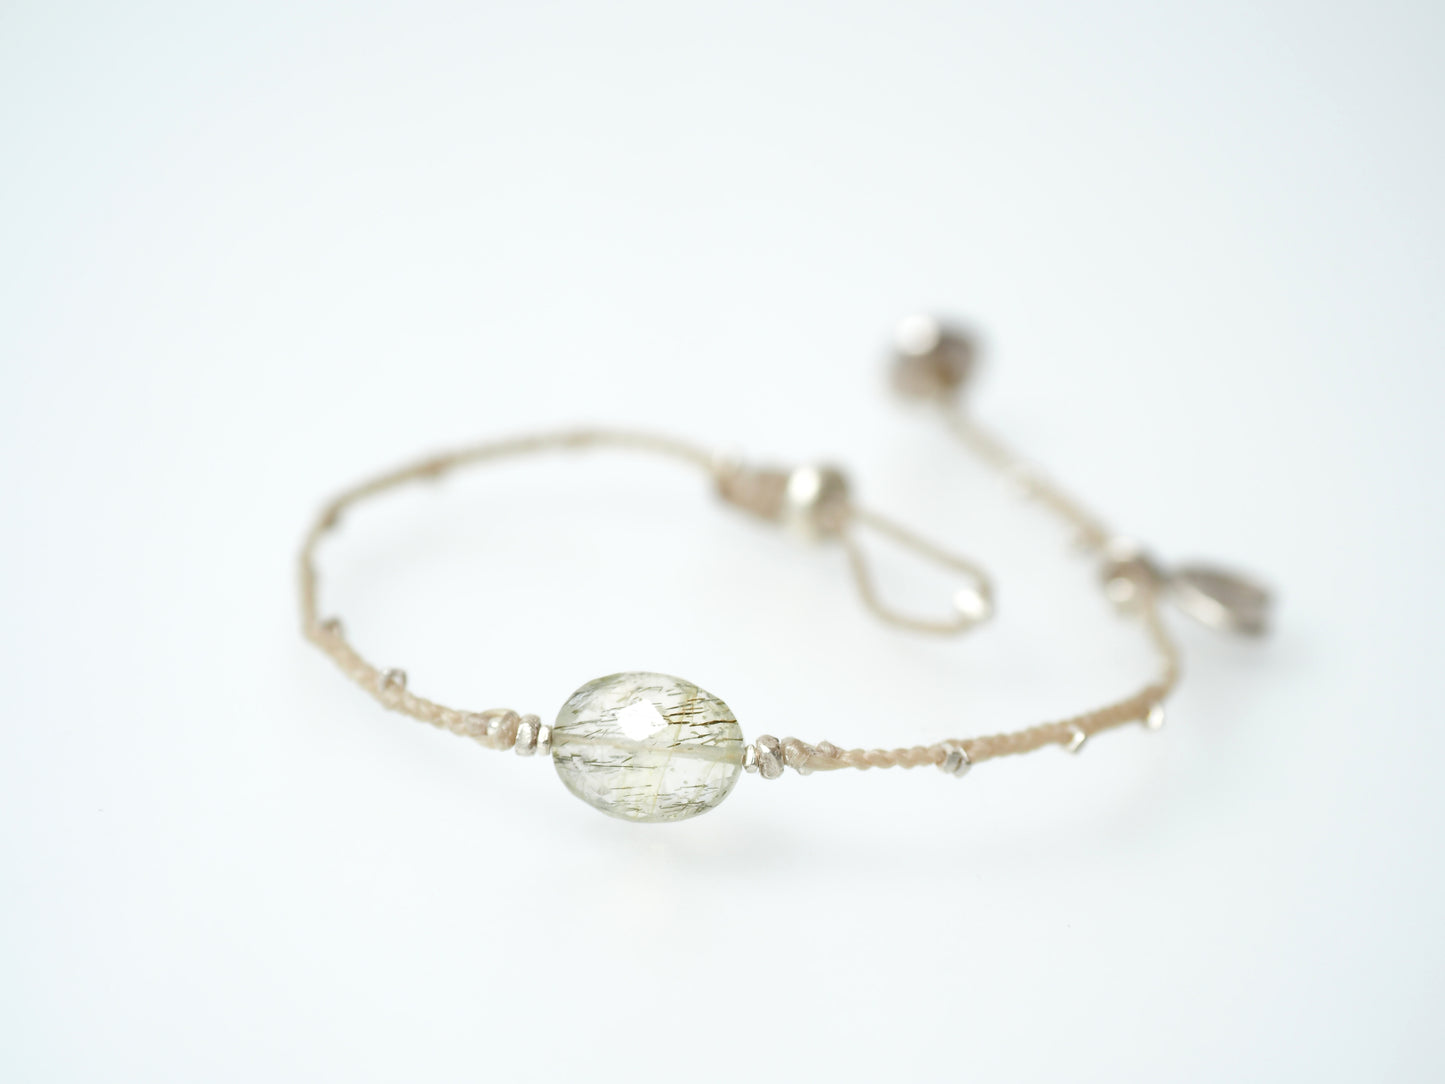 tourmaline quartz braided bracelet